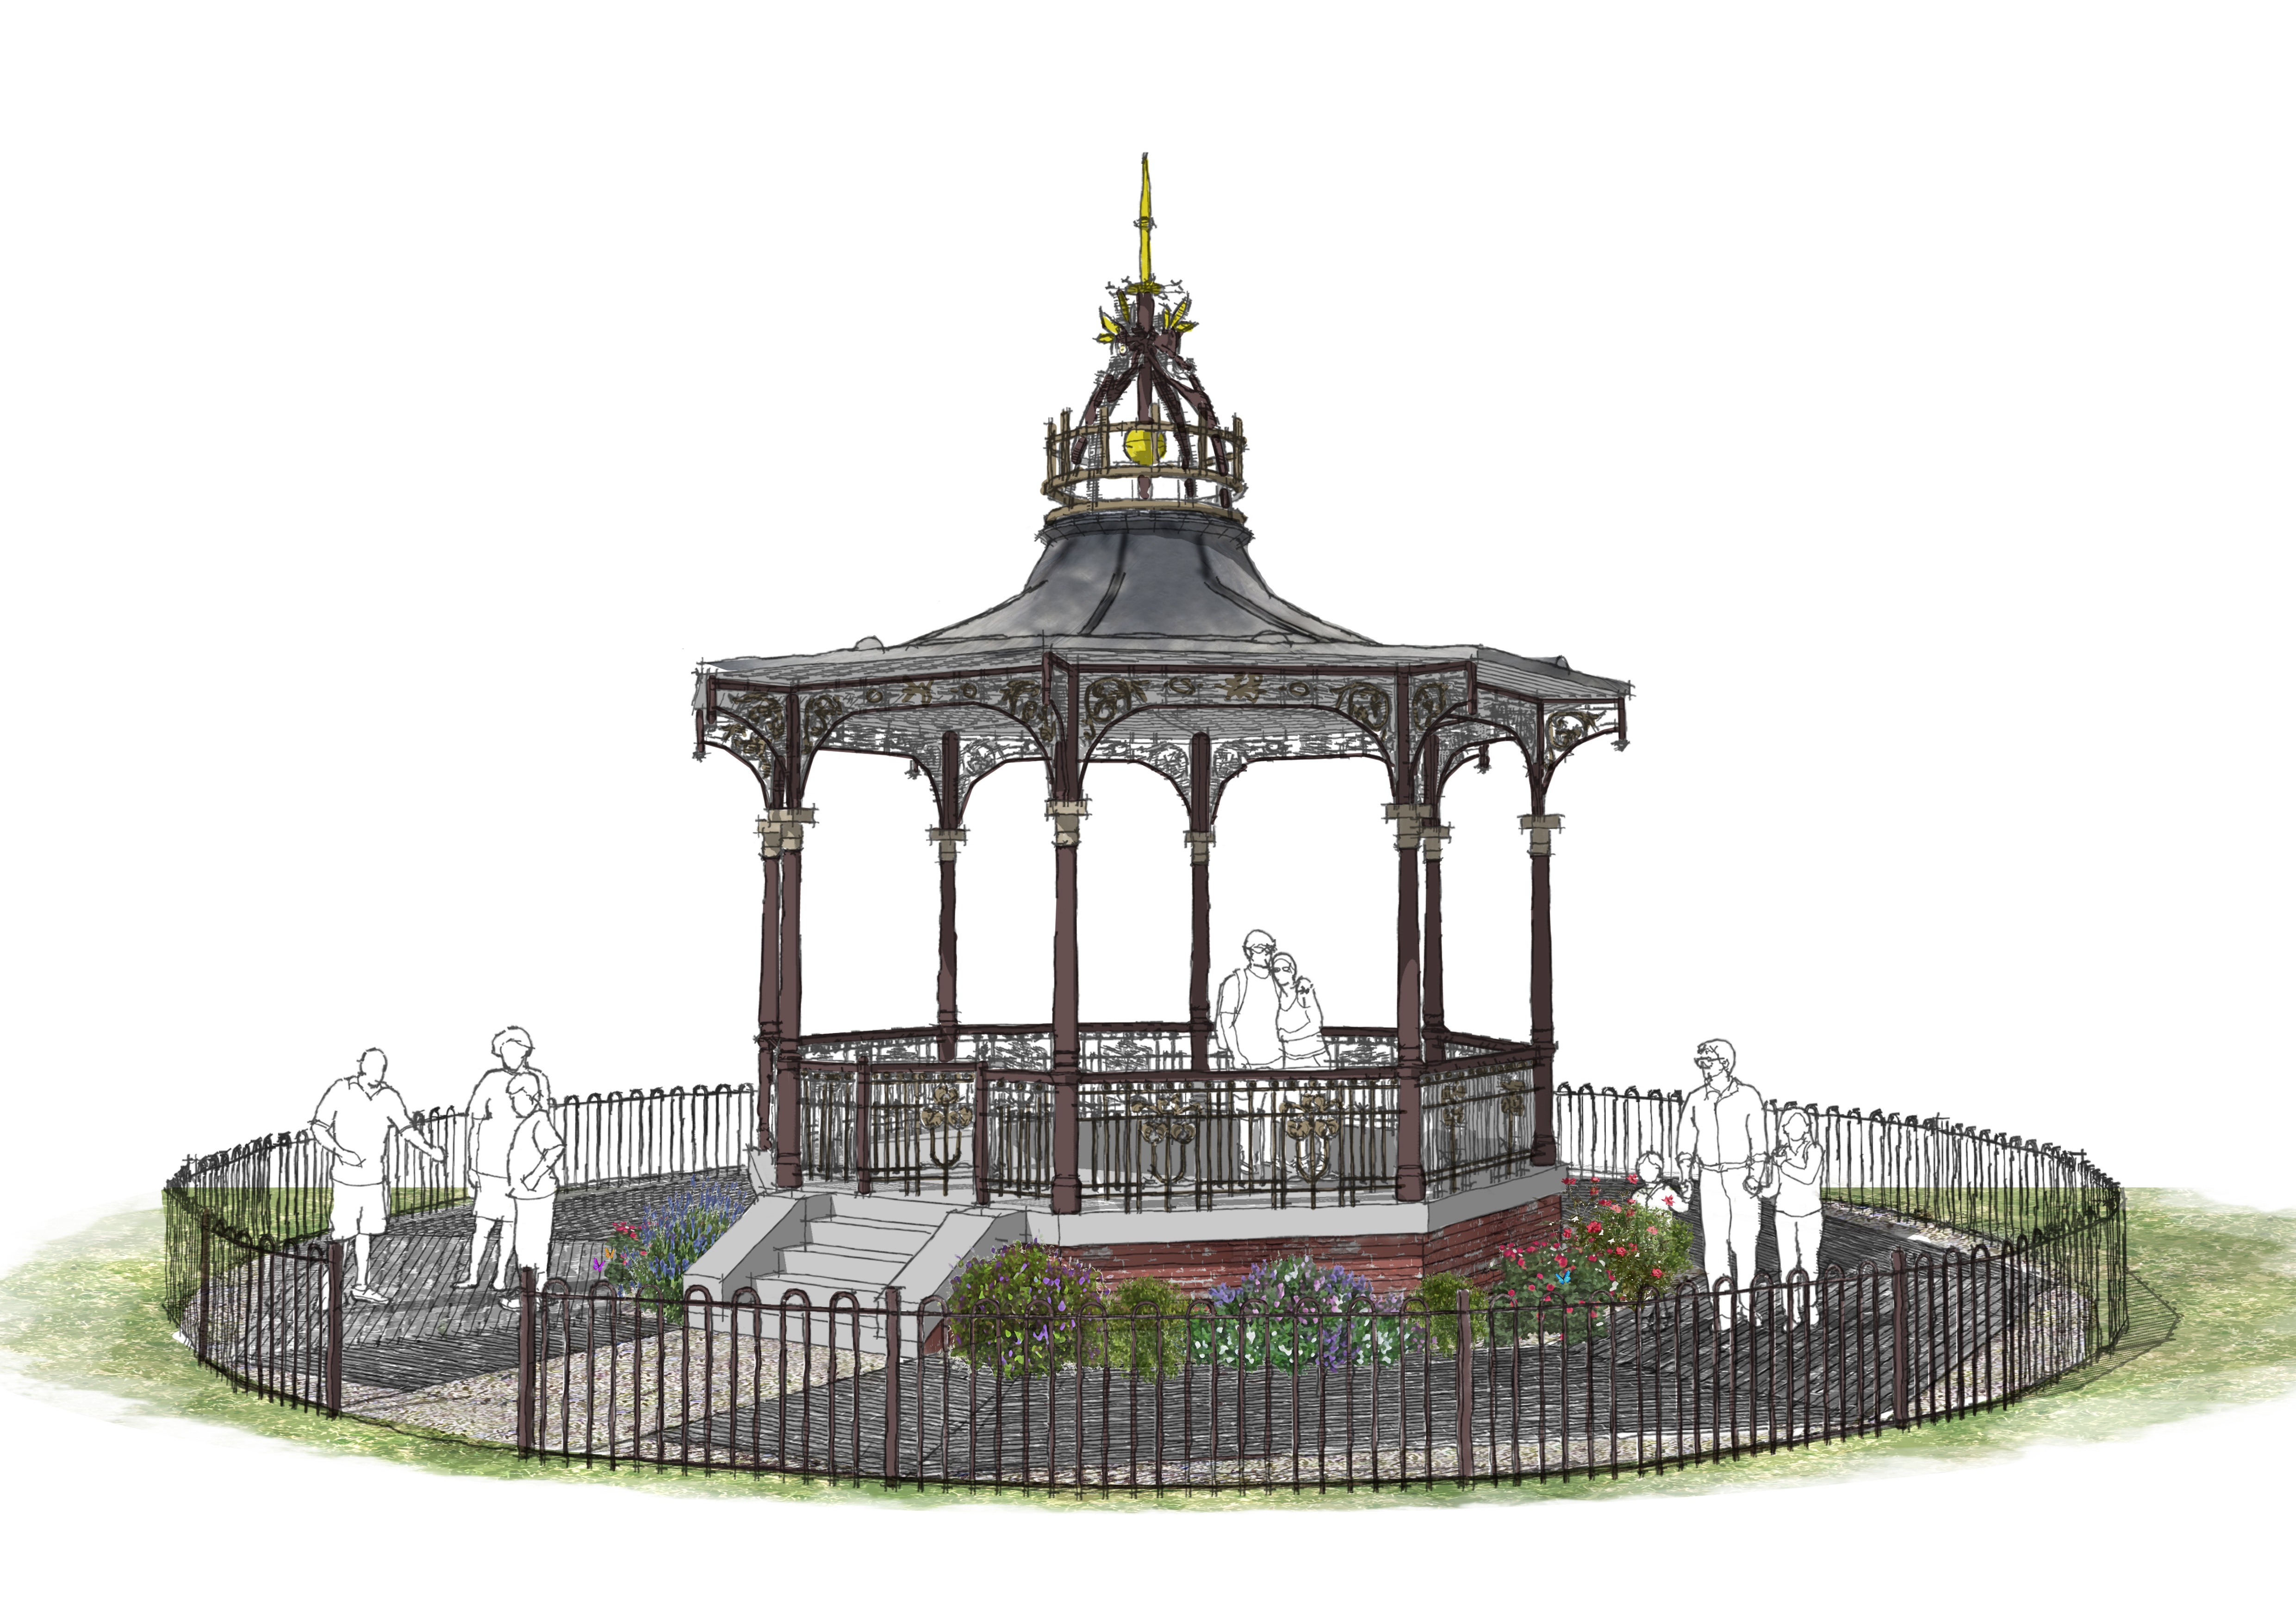 Image of artist impression of restored bandstand